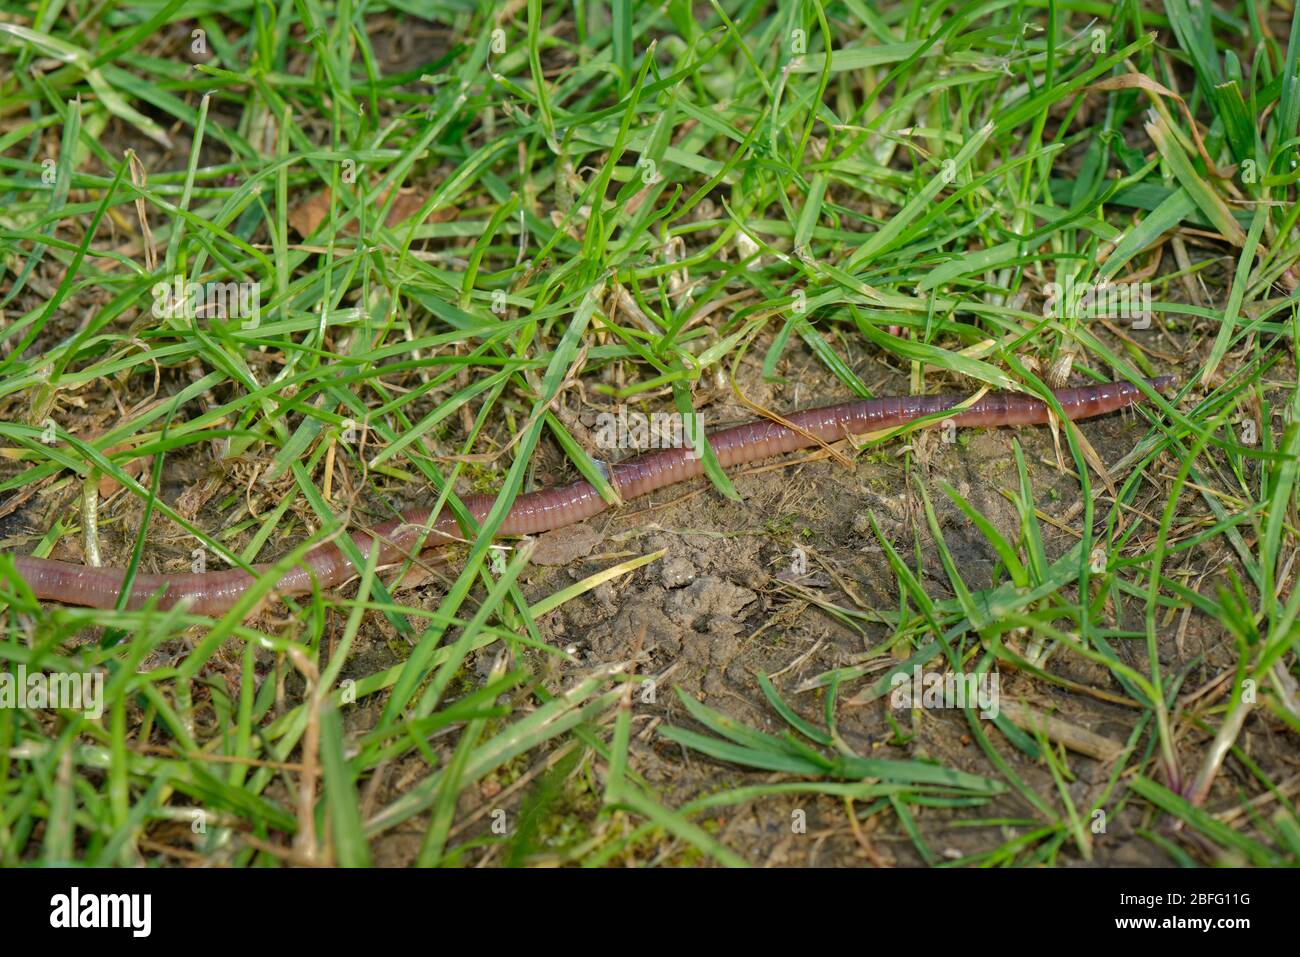 Ver de terre (Lumbricus terrestris) rampant sur une pelouse de jardin, Wiltshire, Royaume-Uni, avril. Banque D'Images